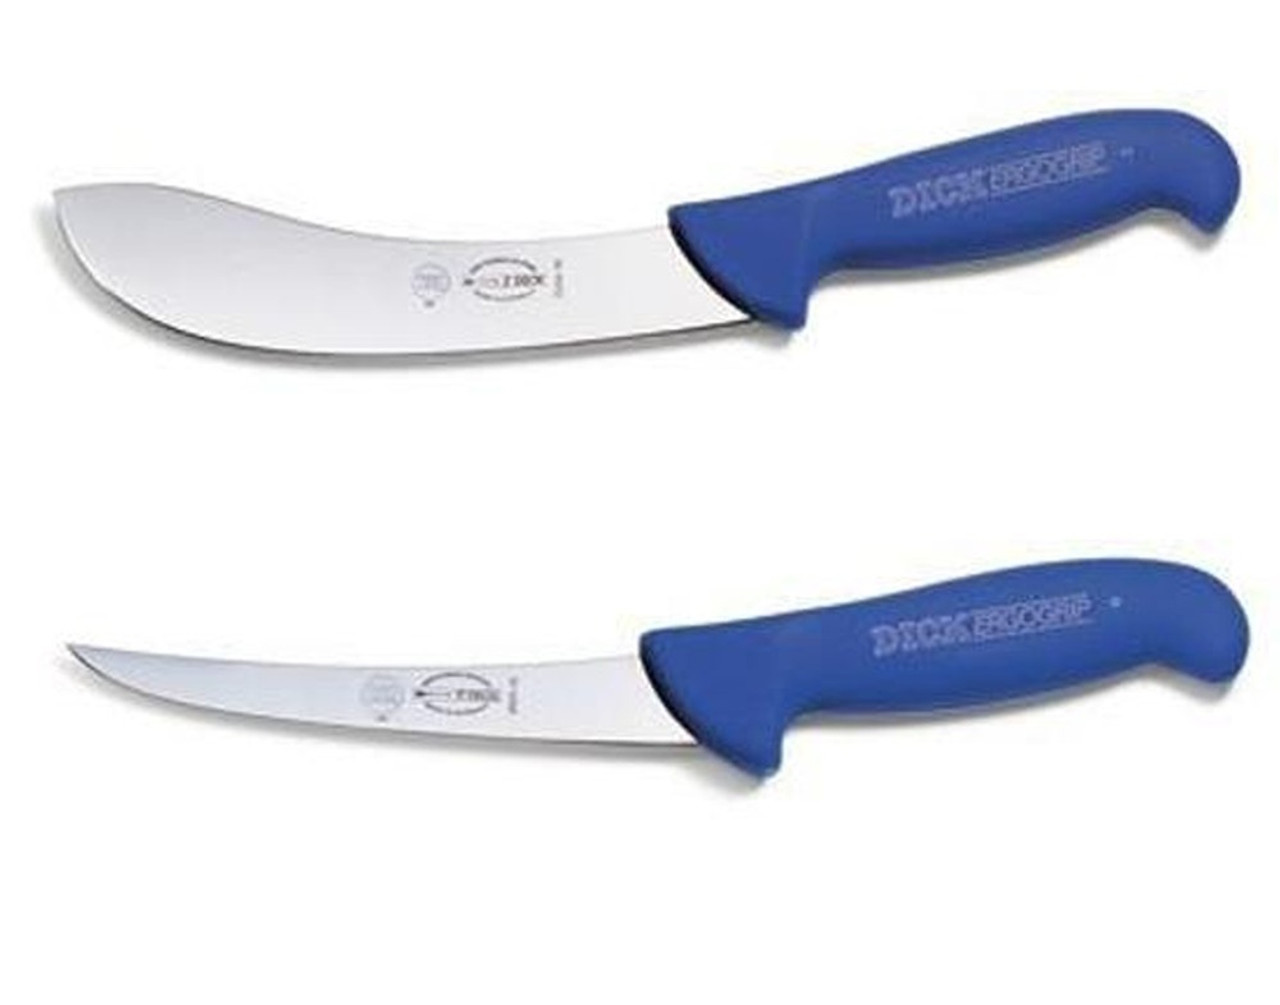 Dick ERGOGRIP Hunters Combo - 8226415 & 8299115 Skinning Boning Knife Set  (8226415 & 8299115)